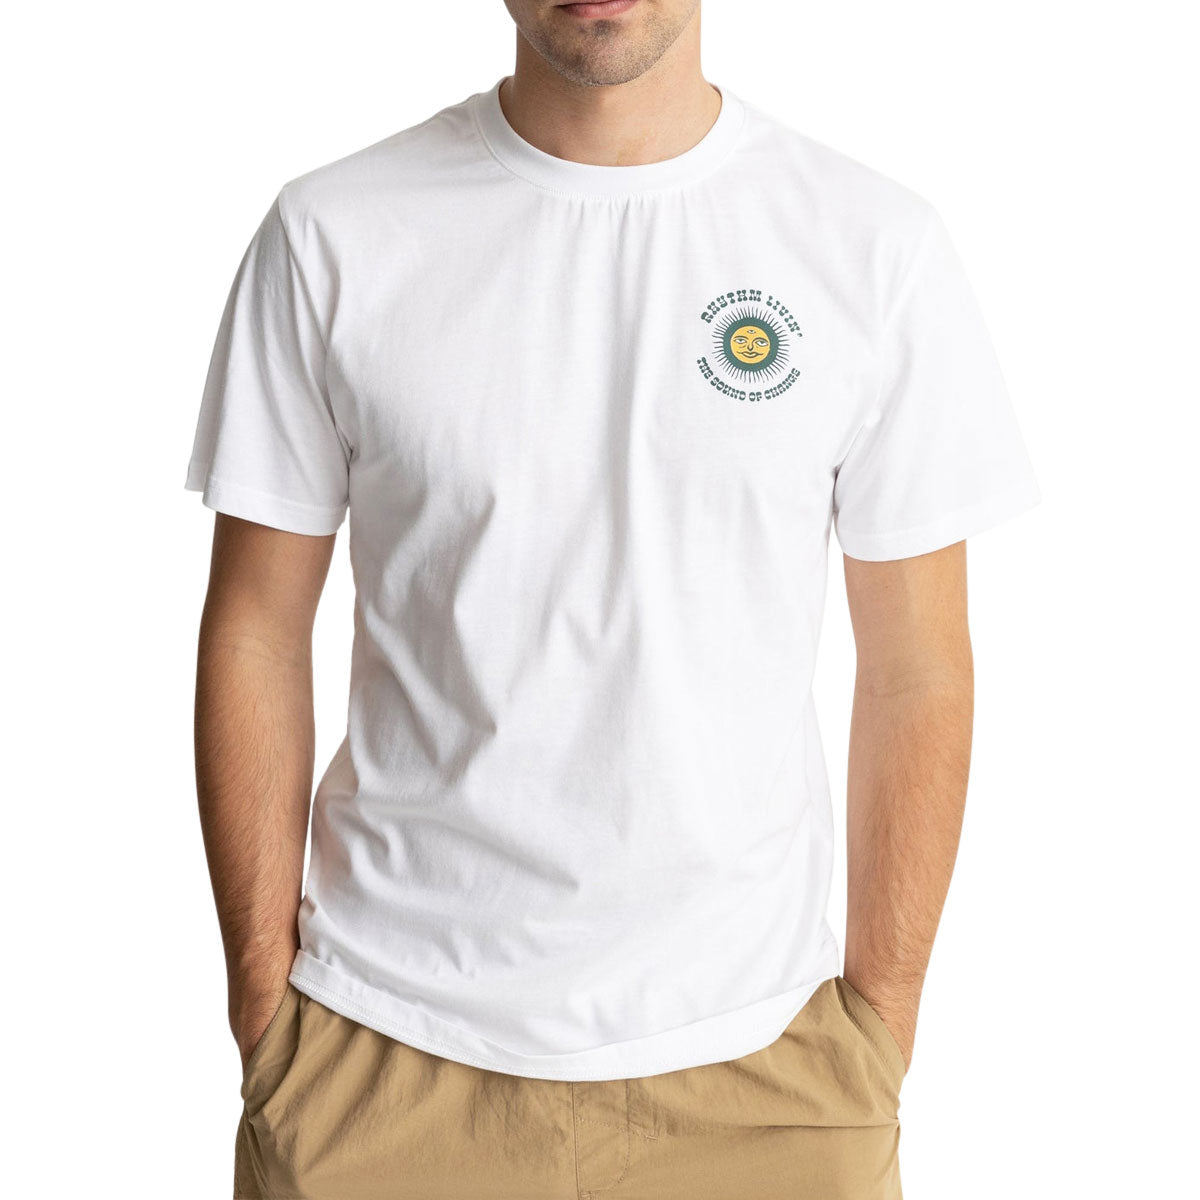 Rhythm Sun Life T-Shirt - Vintage White image 2